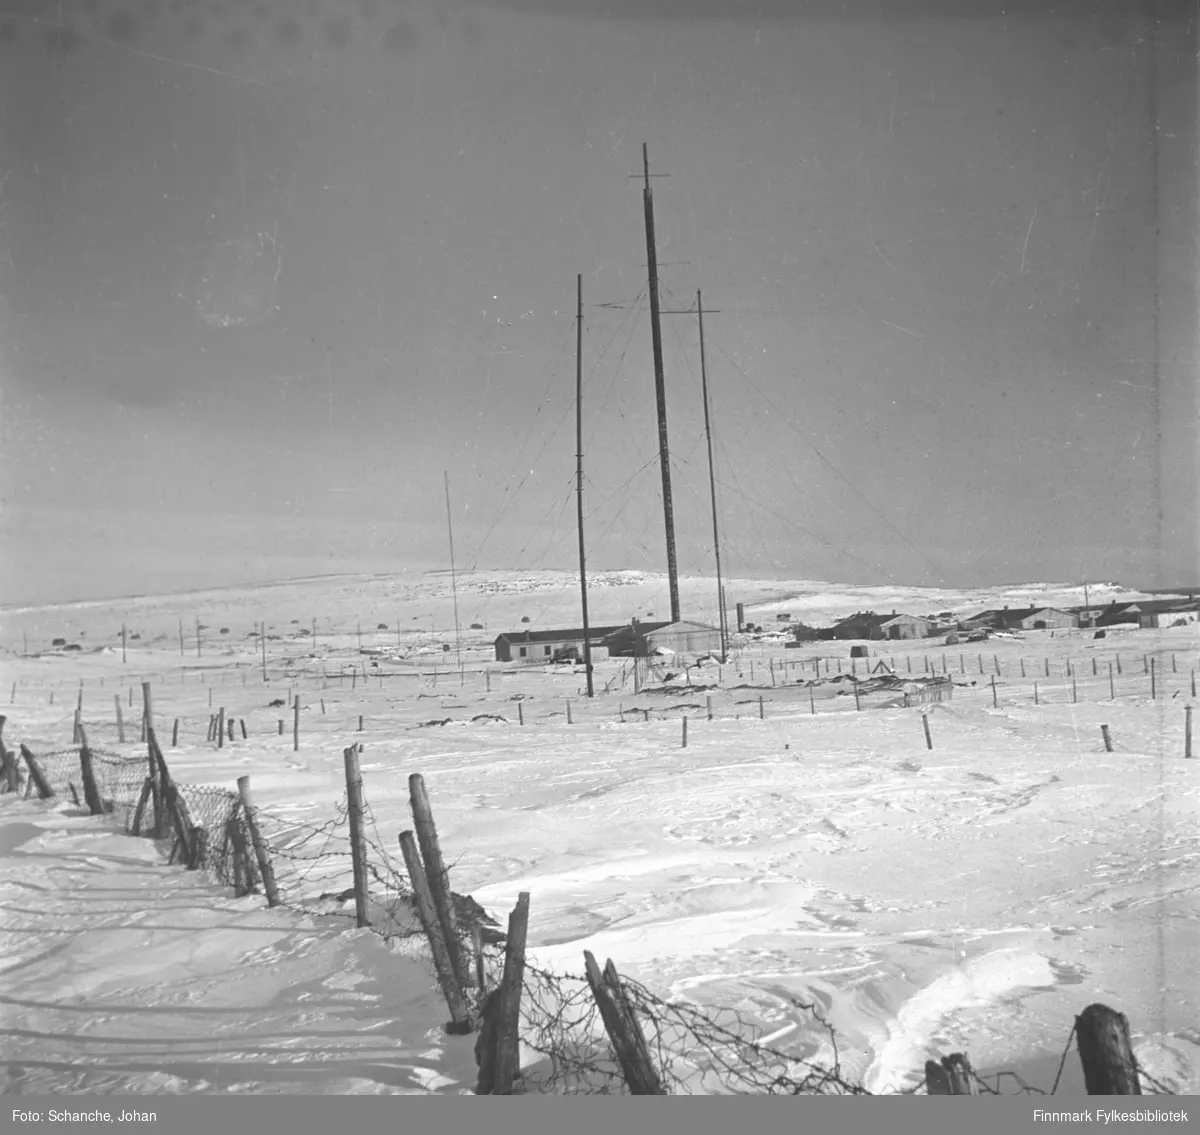 Radiomastene i Vadsø fotografert på vinter -46. Brakkehus. Kringkastingshus ble bombet natt til 3. juni 1940 og kringkasting hold hus i et brakkehus. Mastene står skjevt. Nederst på bildet piggtrådgjerde.